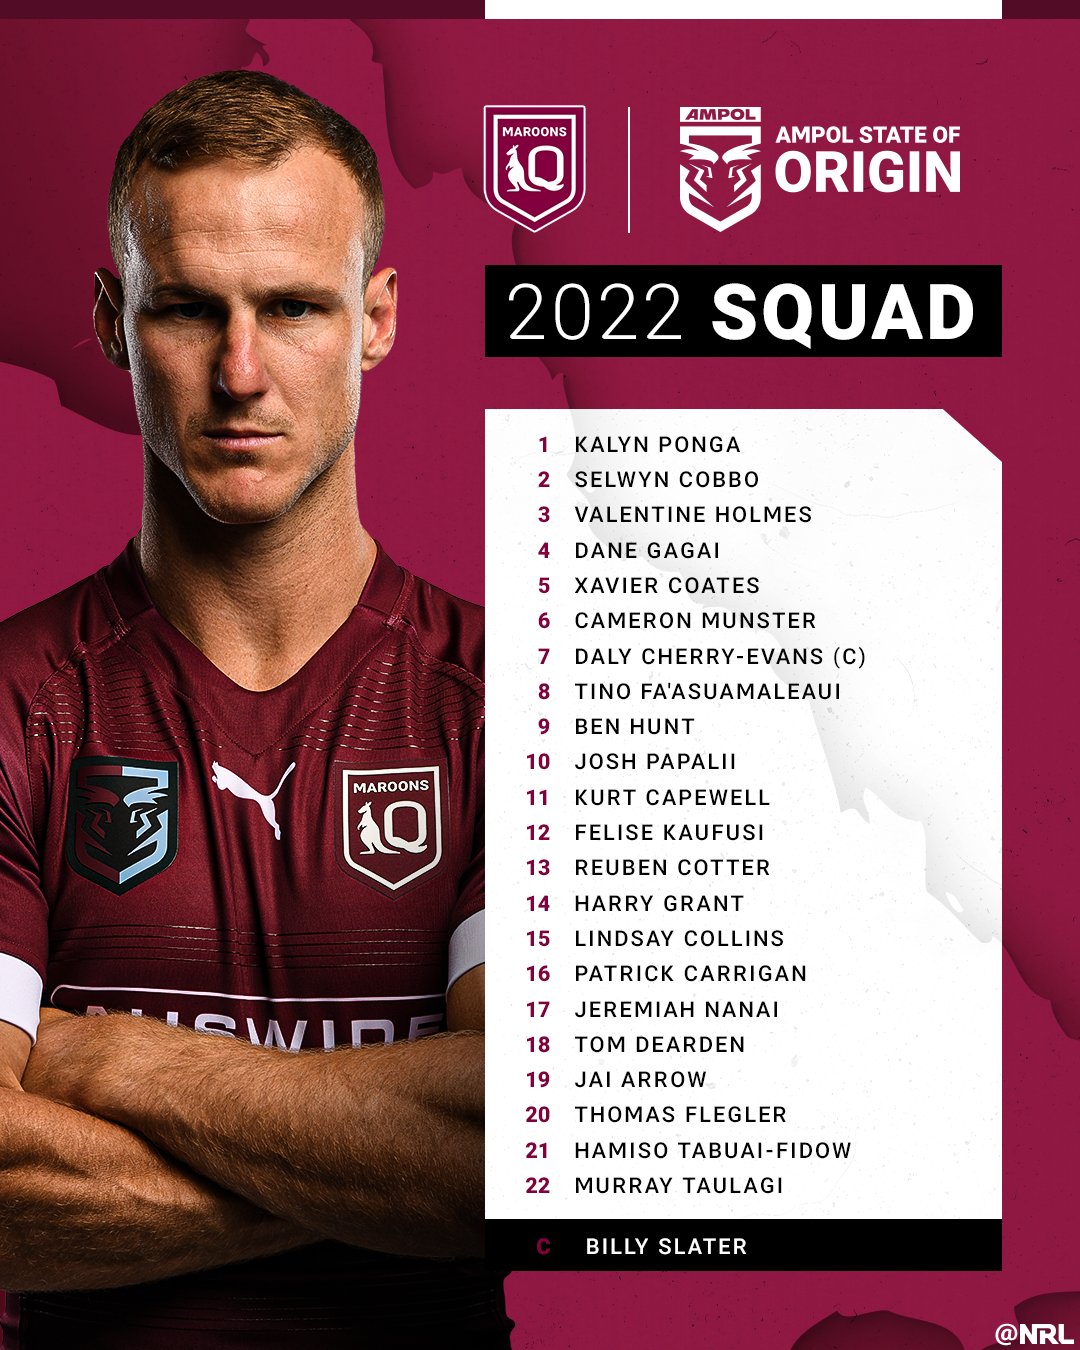 Origin I squad: Đội tuyển Origin I có những cầu thủ tài năng và được mong chờ nhất thế giới bóng đá. Xem hình ảnh liên quan để khám phá ra sự sẵn sàng và tận tụy của các cầu thủ trong mỗi trận đấu.